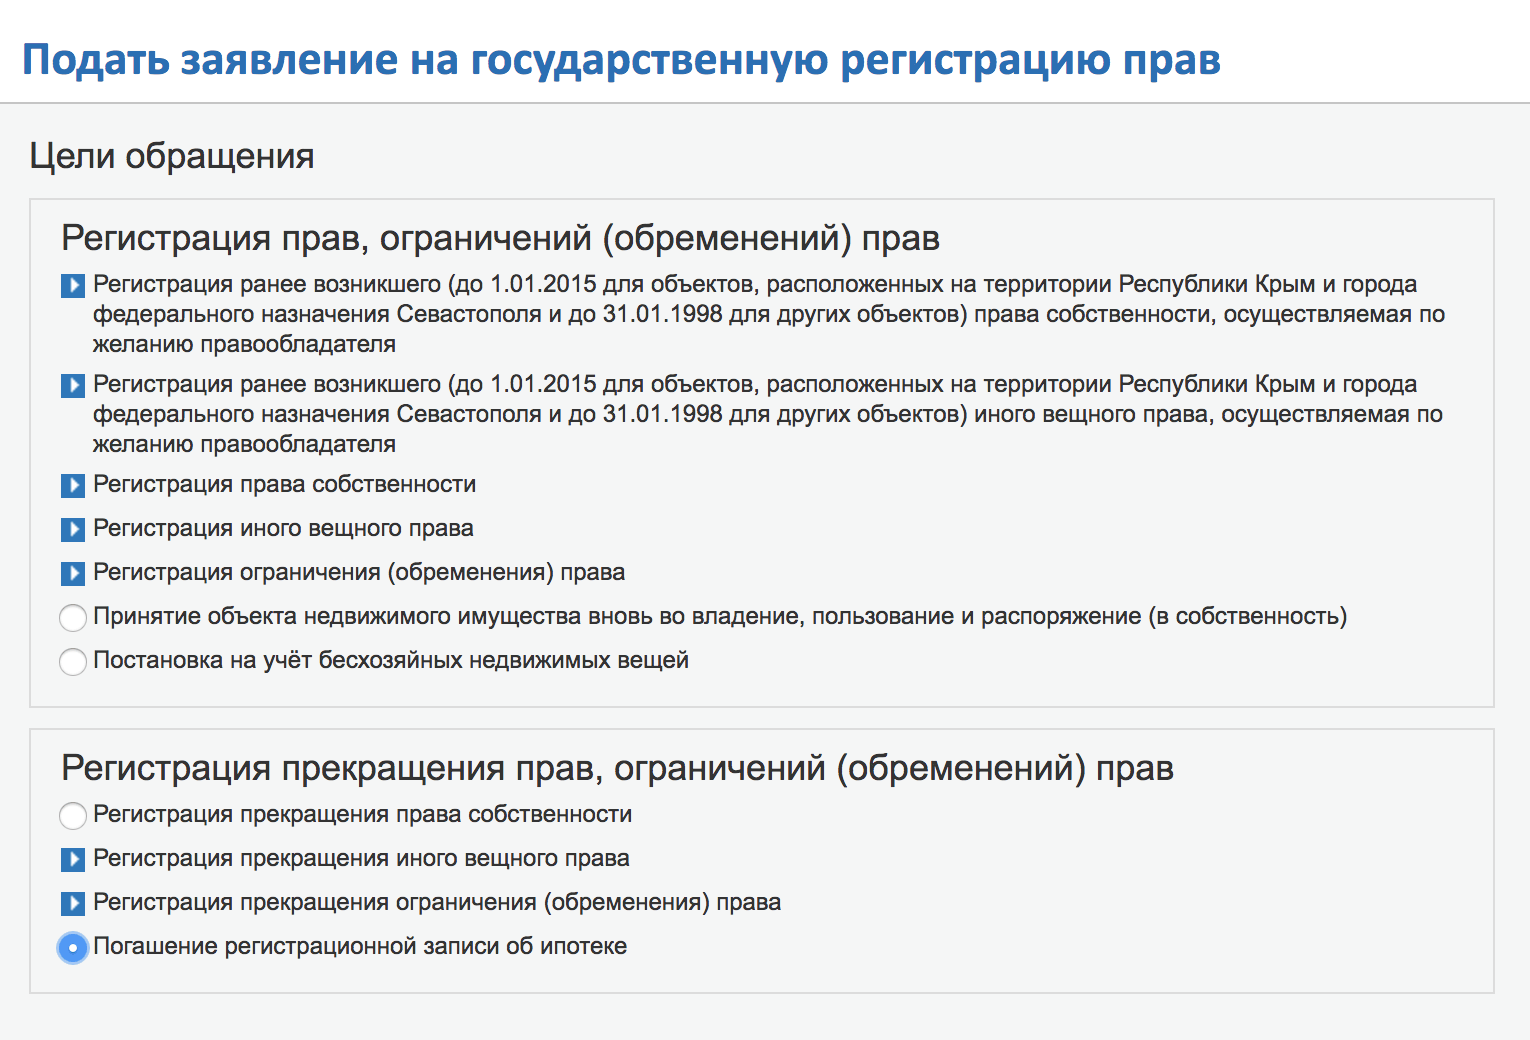 Прием на работу граждан из луганска в 2020 году какие документы